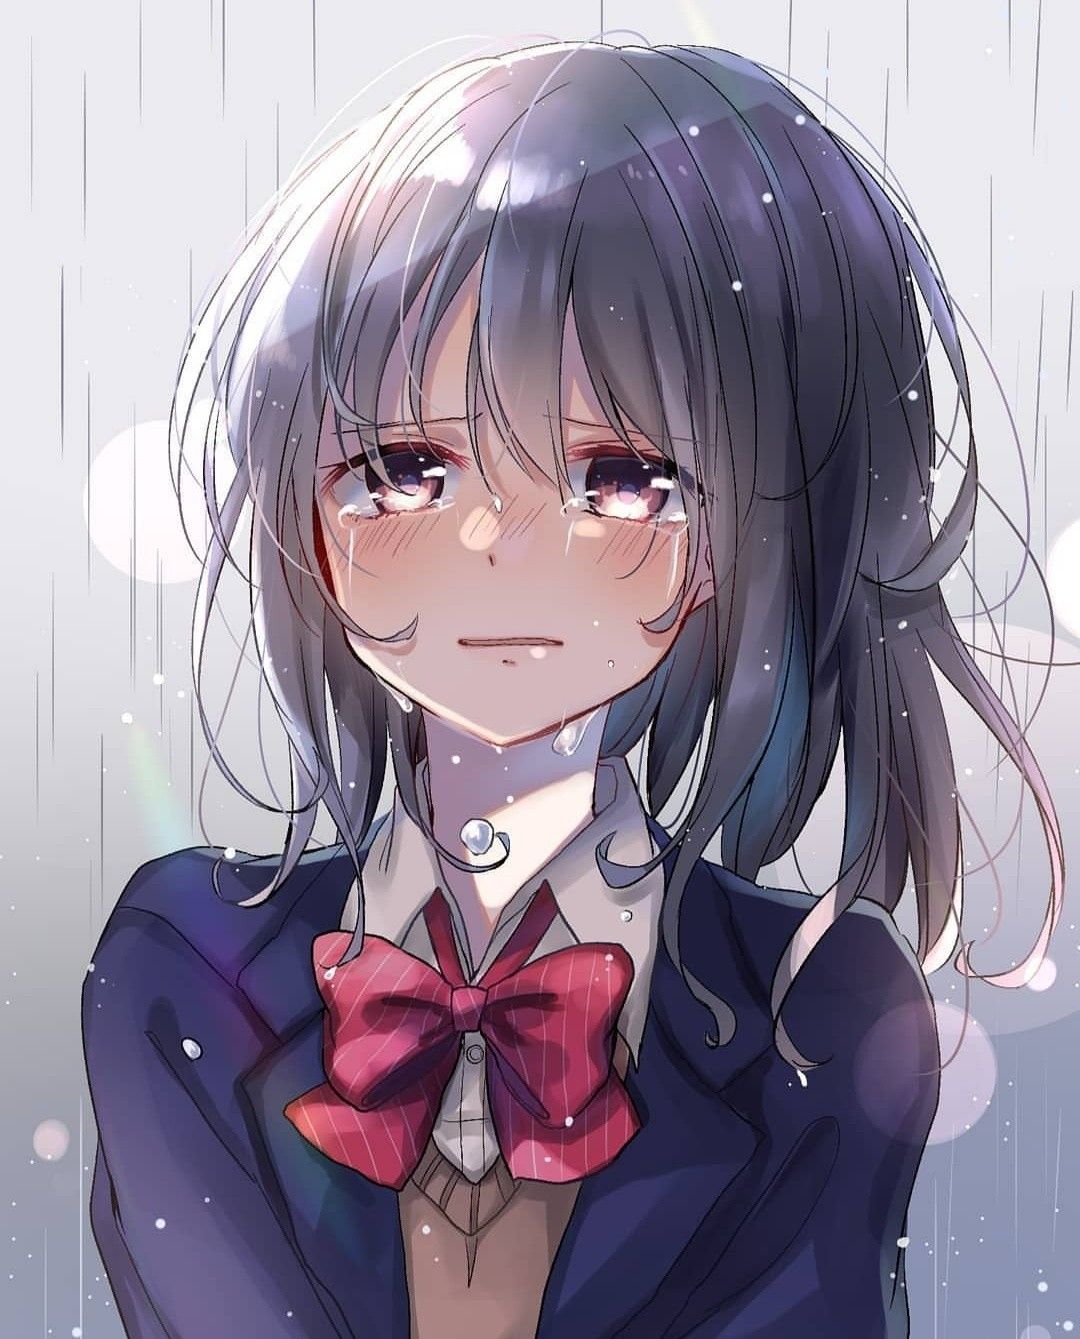 Sad dễ thương anime girl crying